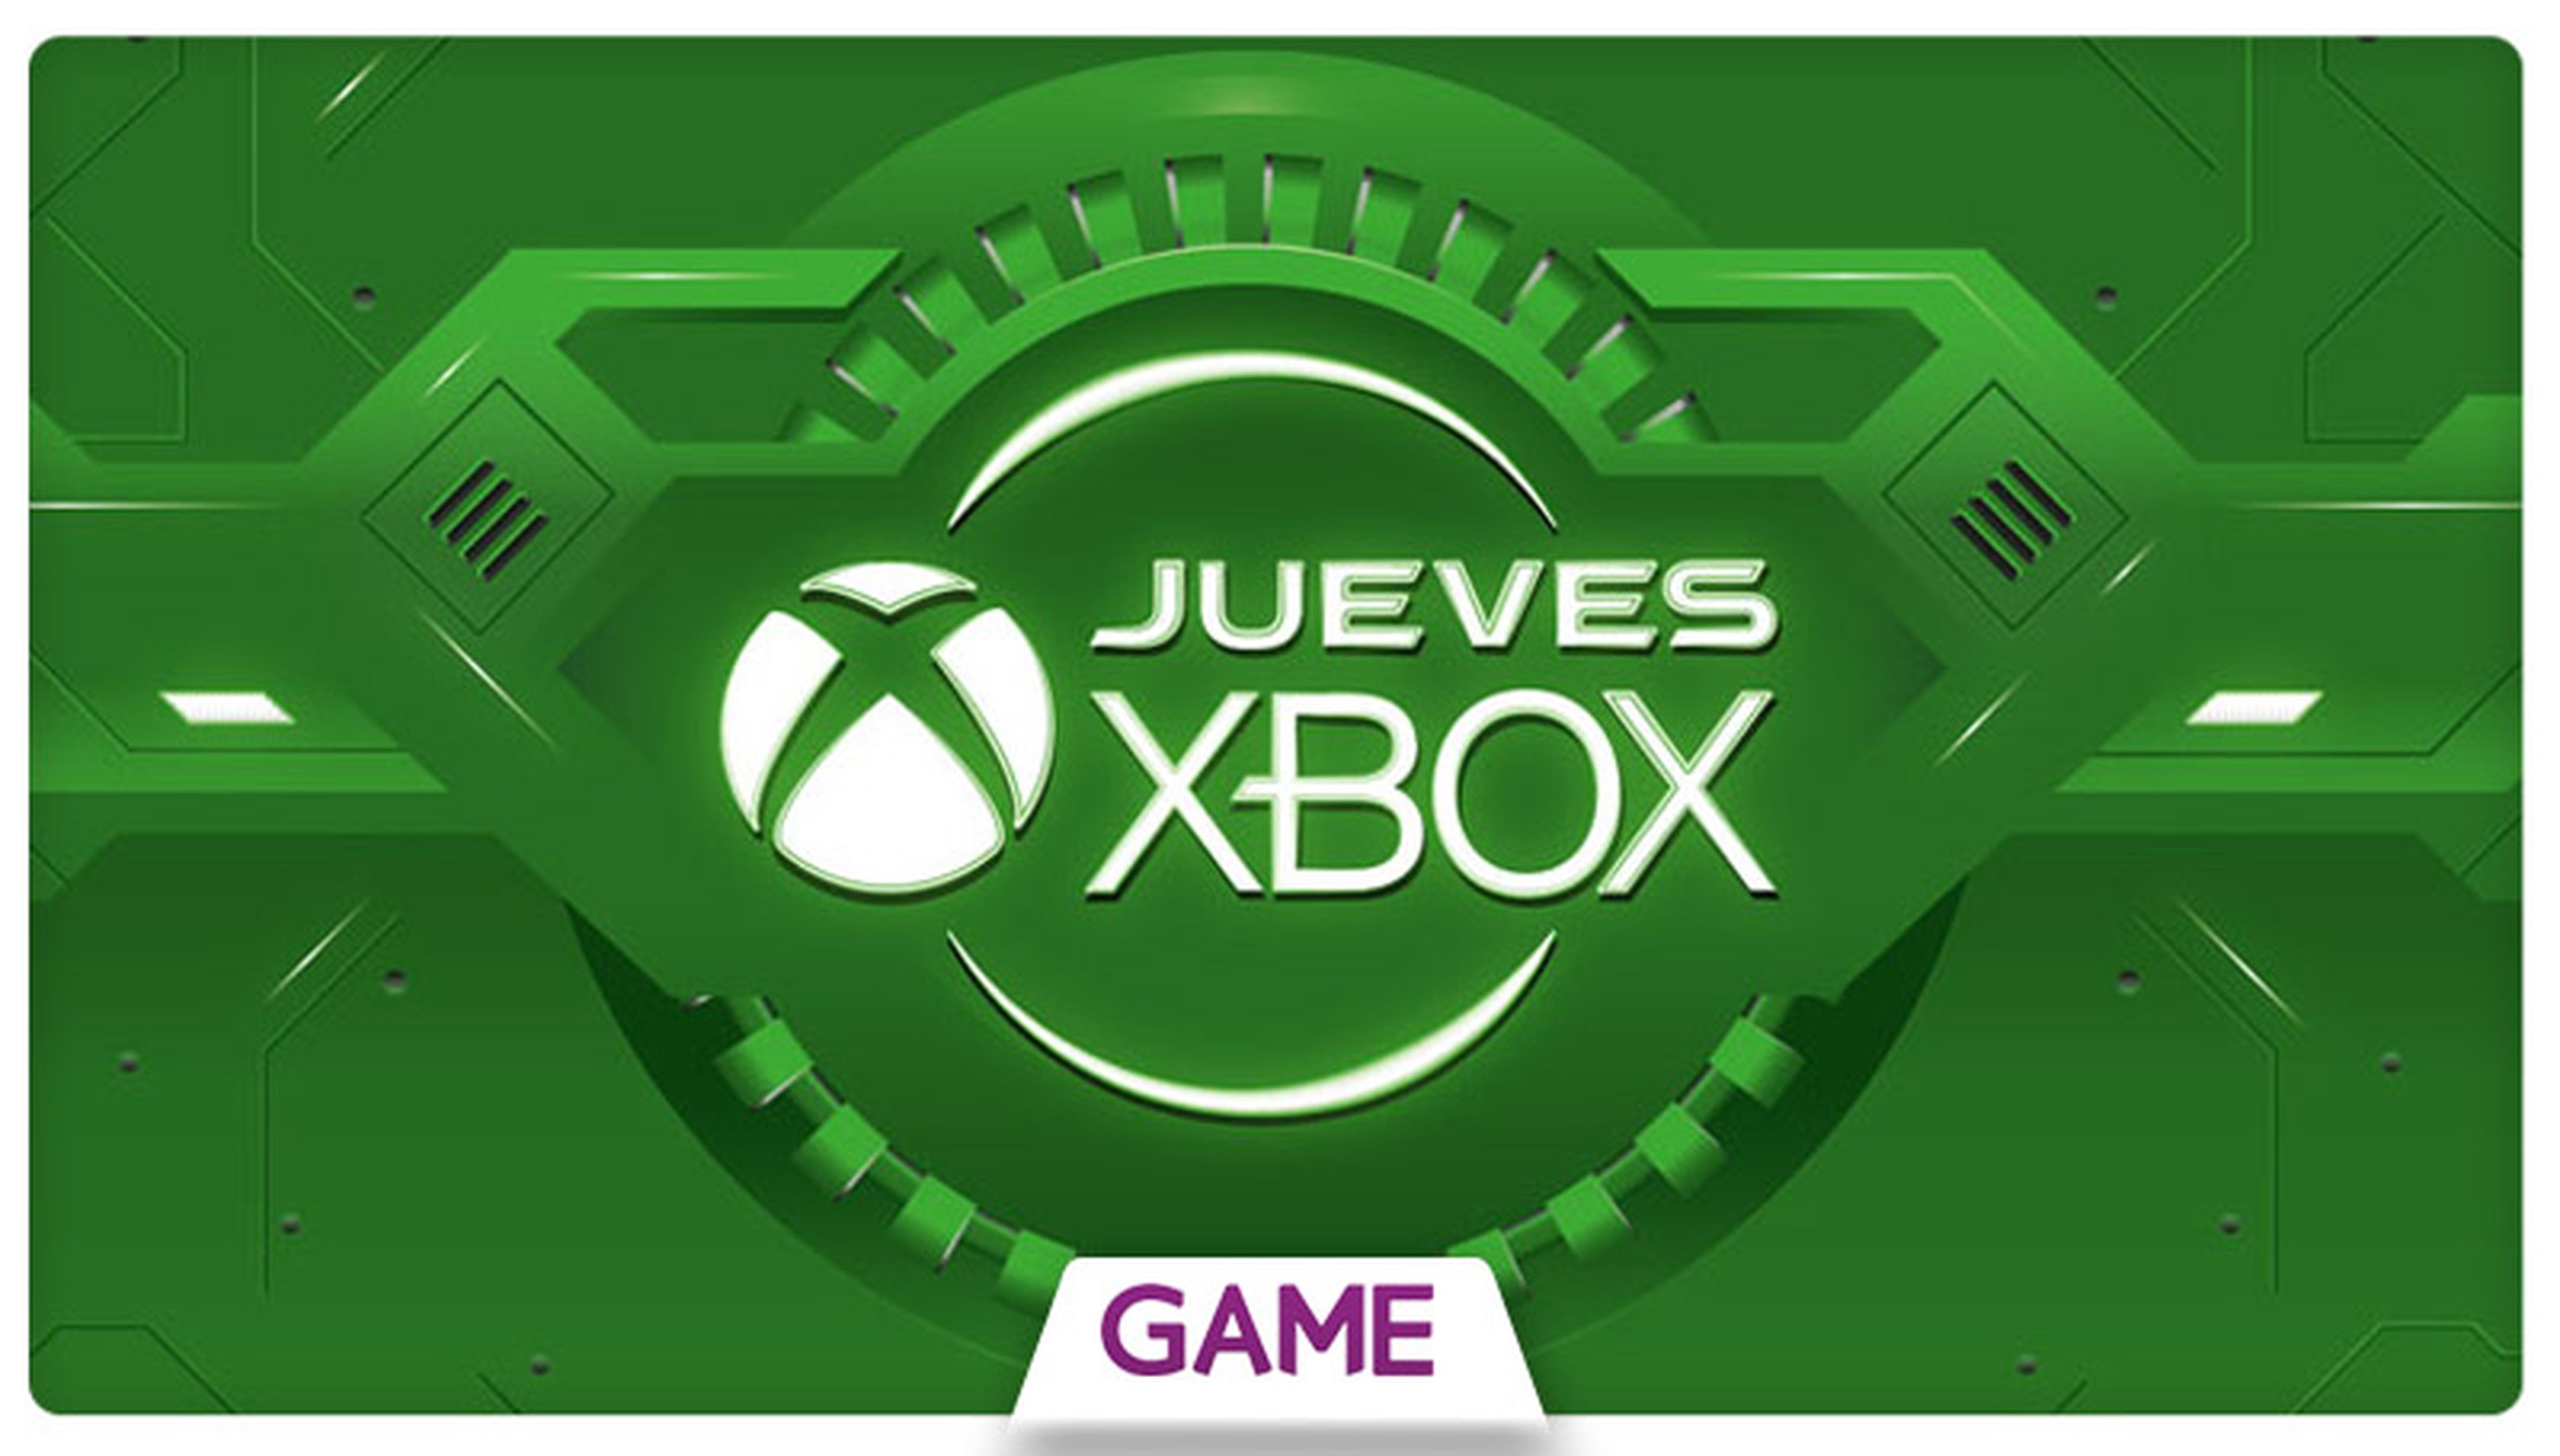 Jueves Xbox en GAME: Ofertas del 04/02/2016